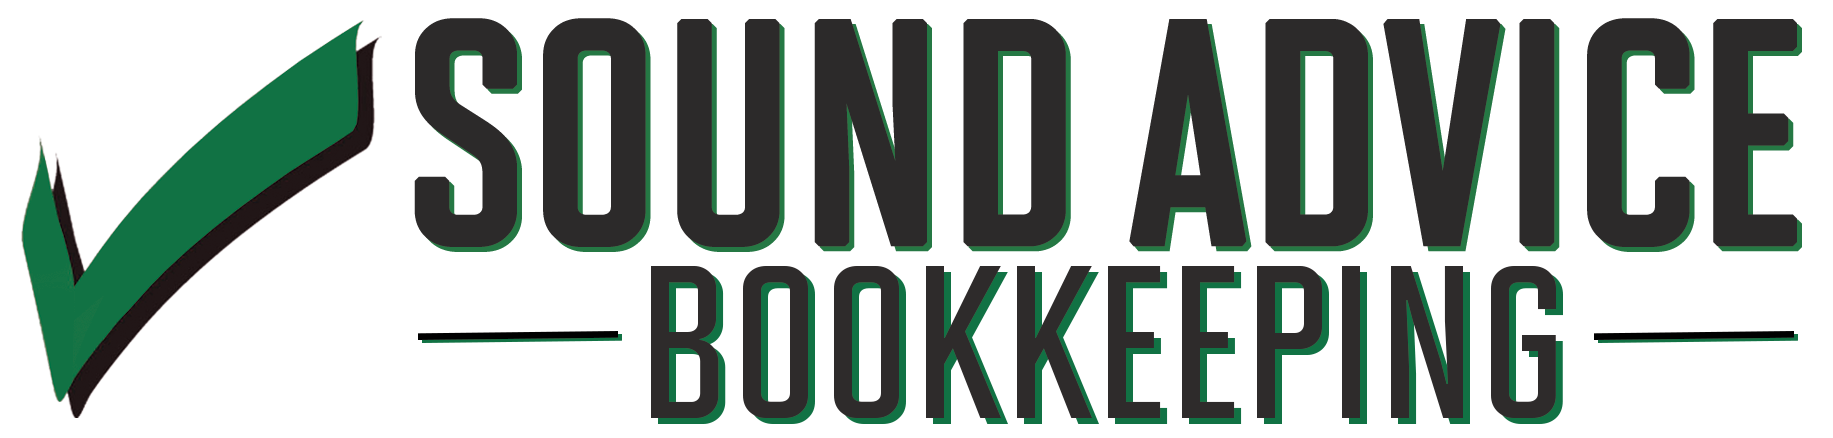 SA-Bookkeeping-Green-Logo (2)